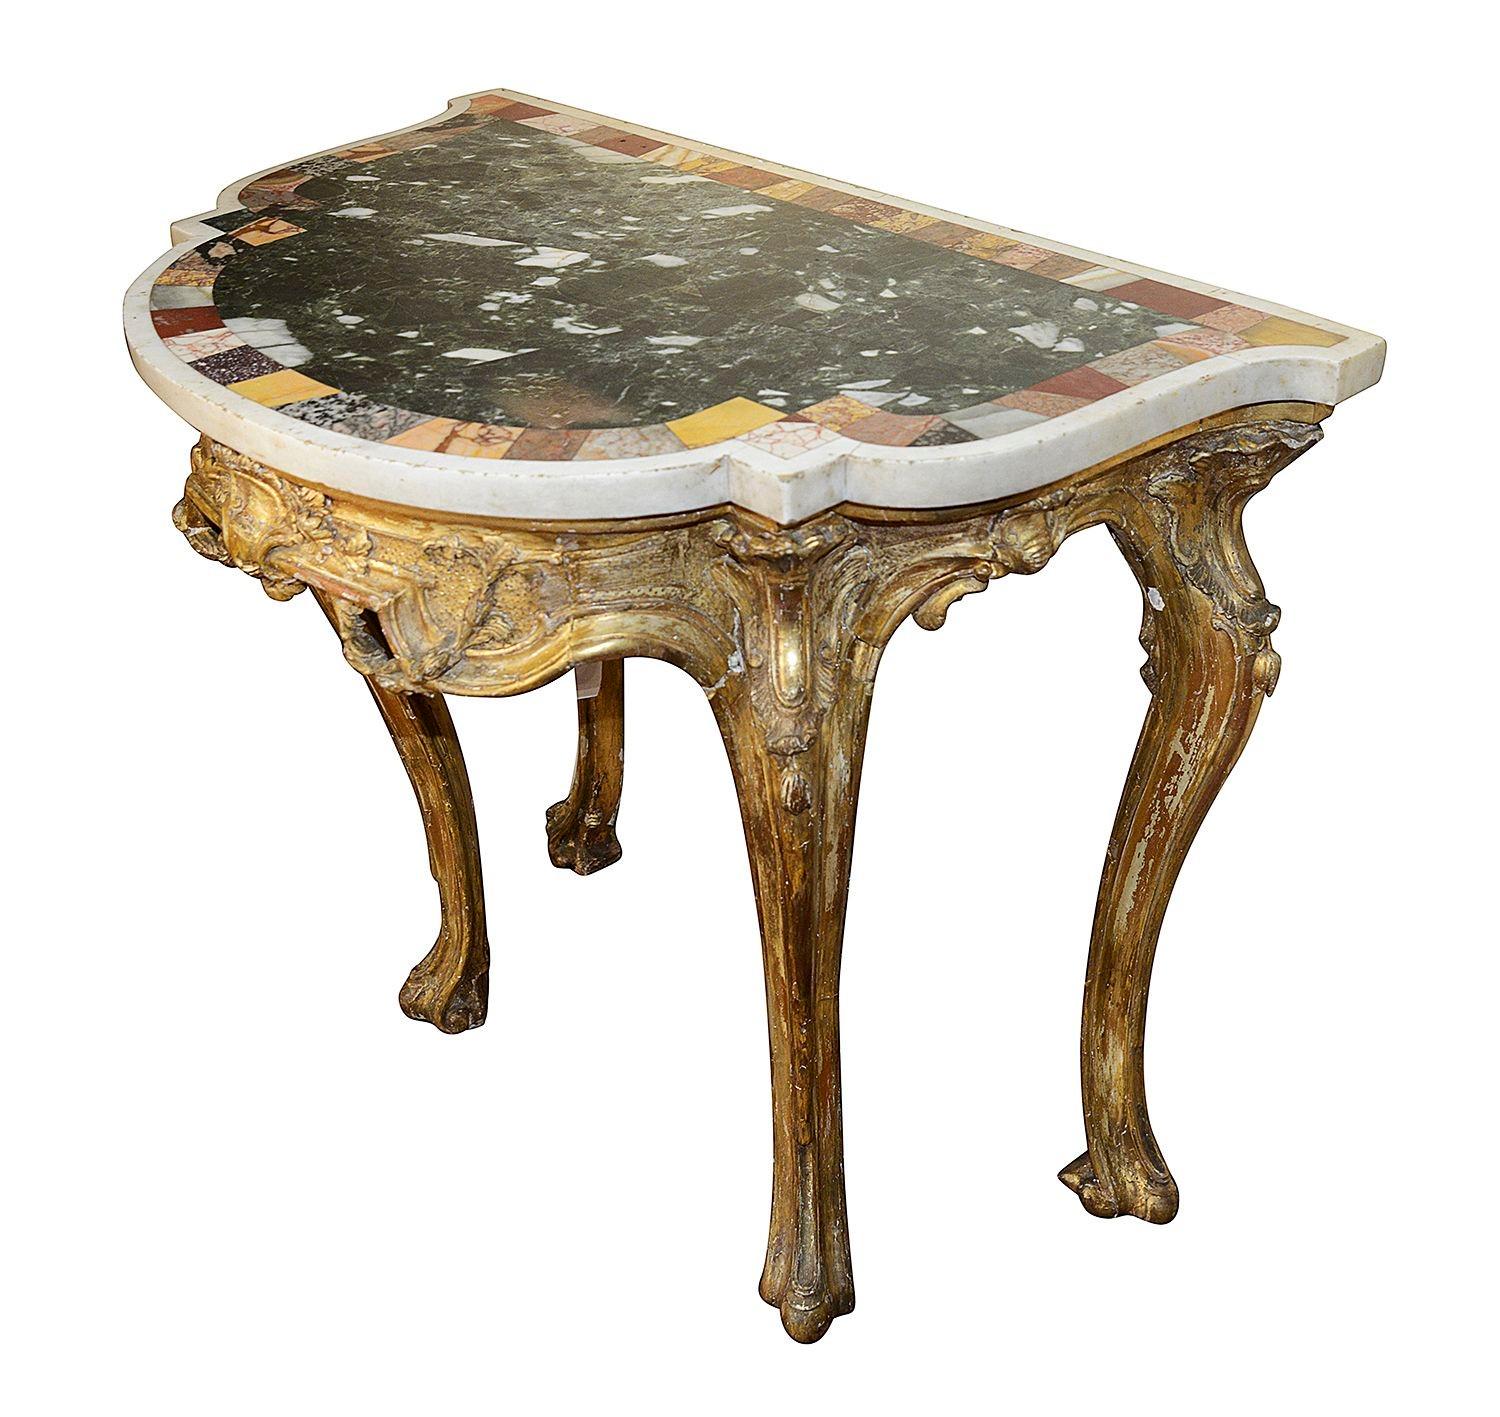 Eine markante 18. Jahrhundert geschnitzt vergoldetem Holz venezianischen Konsole Tisch, mit einer wunderbaren ursprünglichen Serpentin geformt eingelegten Probe Marmorplatte. Auf vier klassischen Cabriole-Säulen stehend, der Fries mit geschnitzten